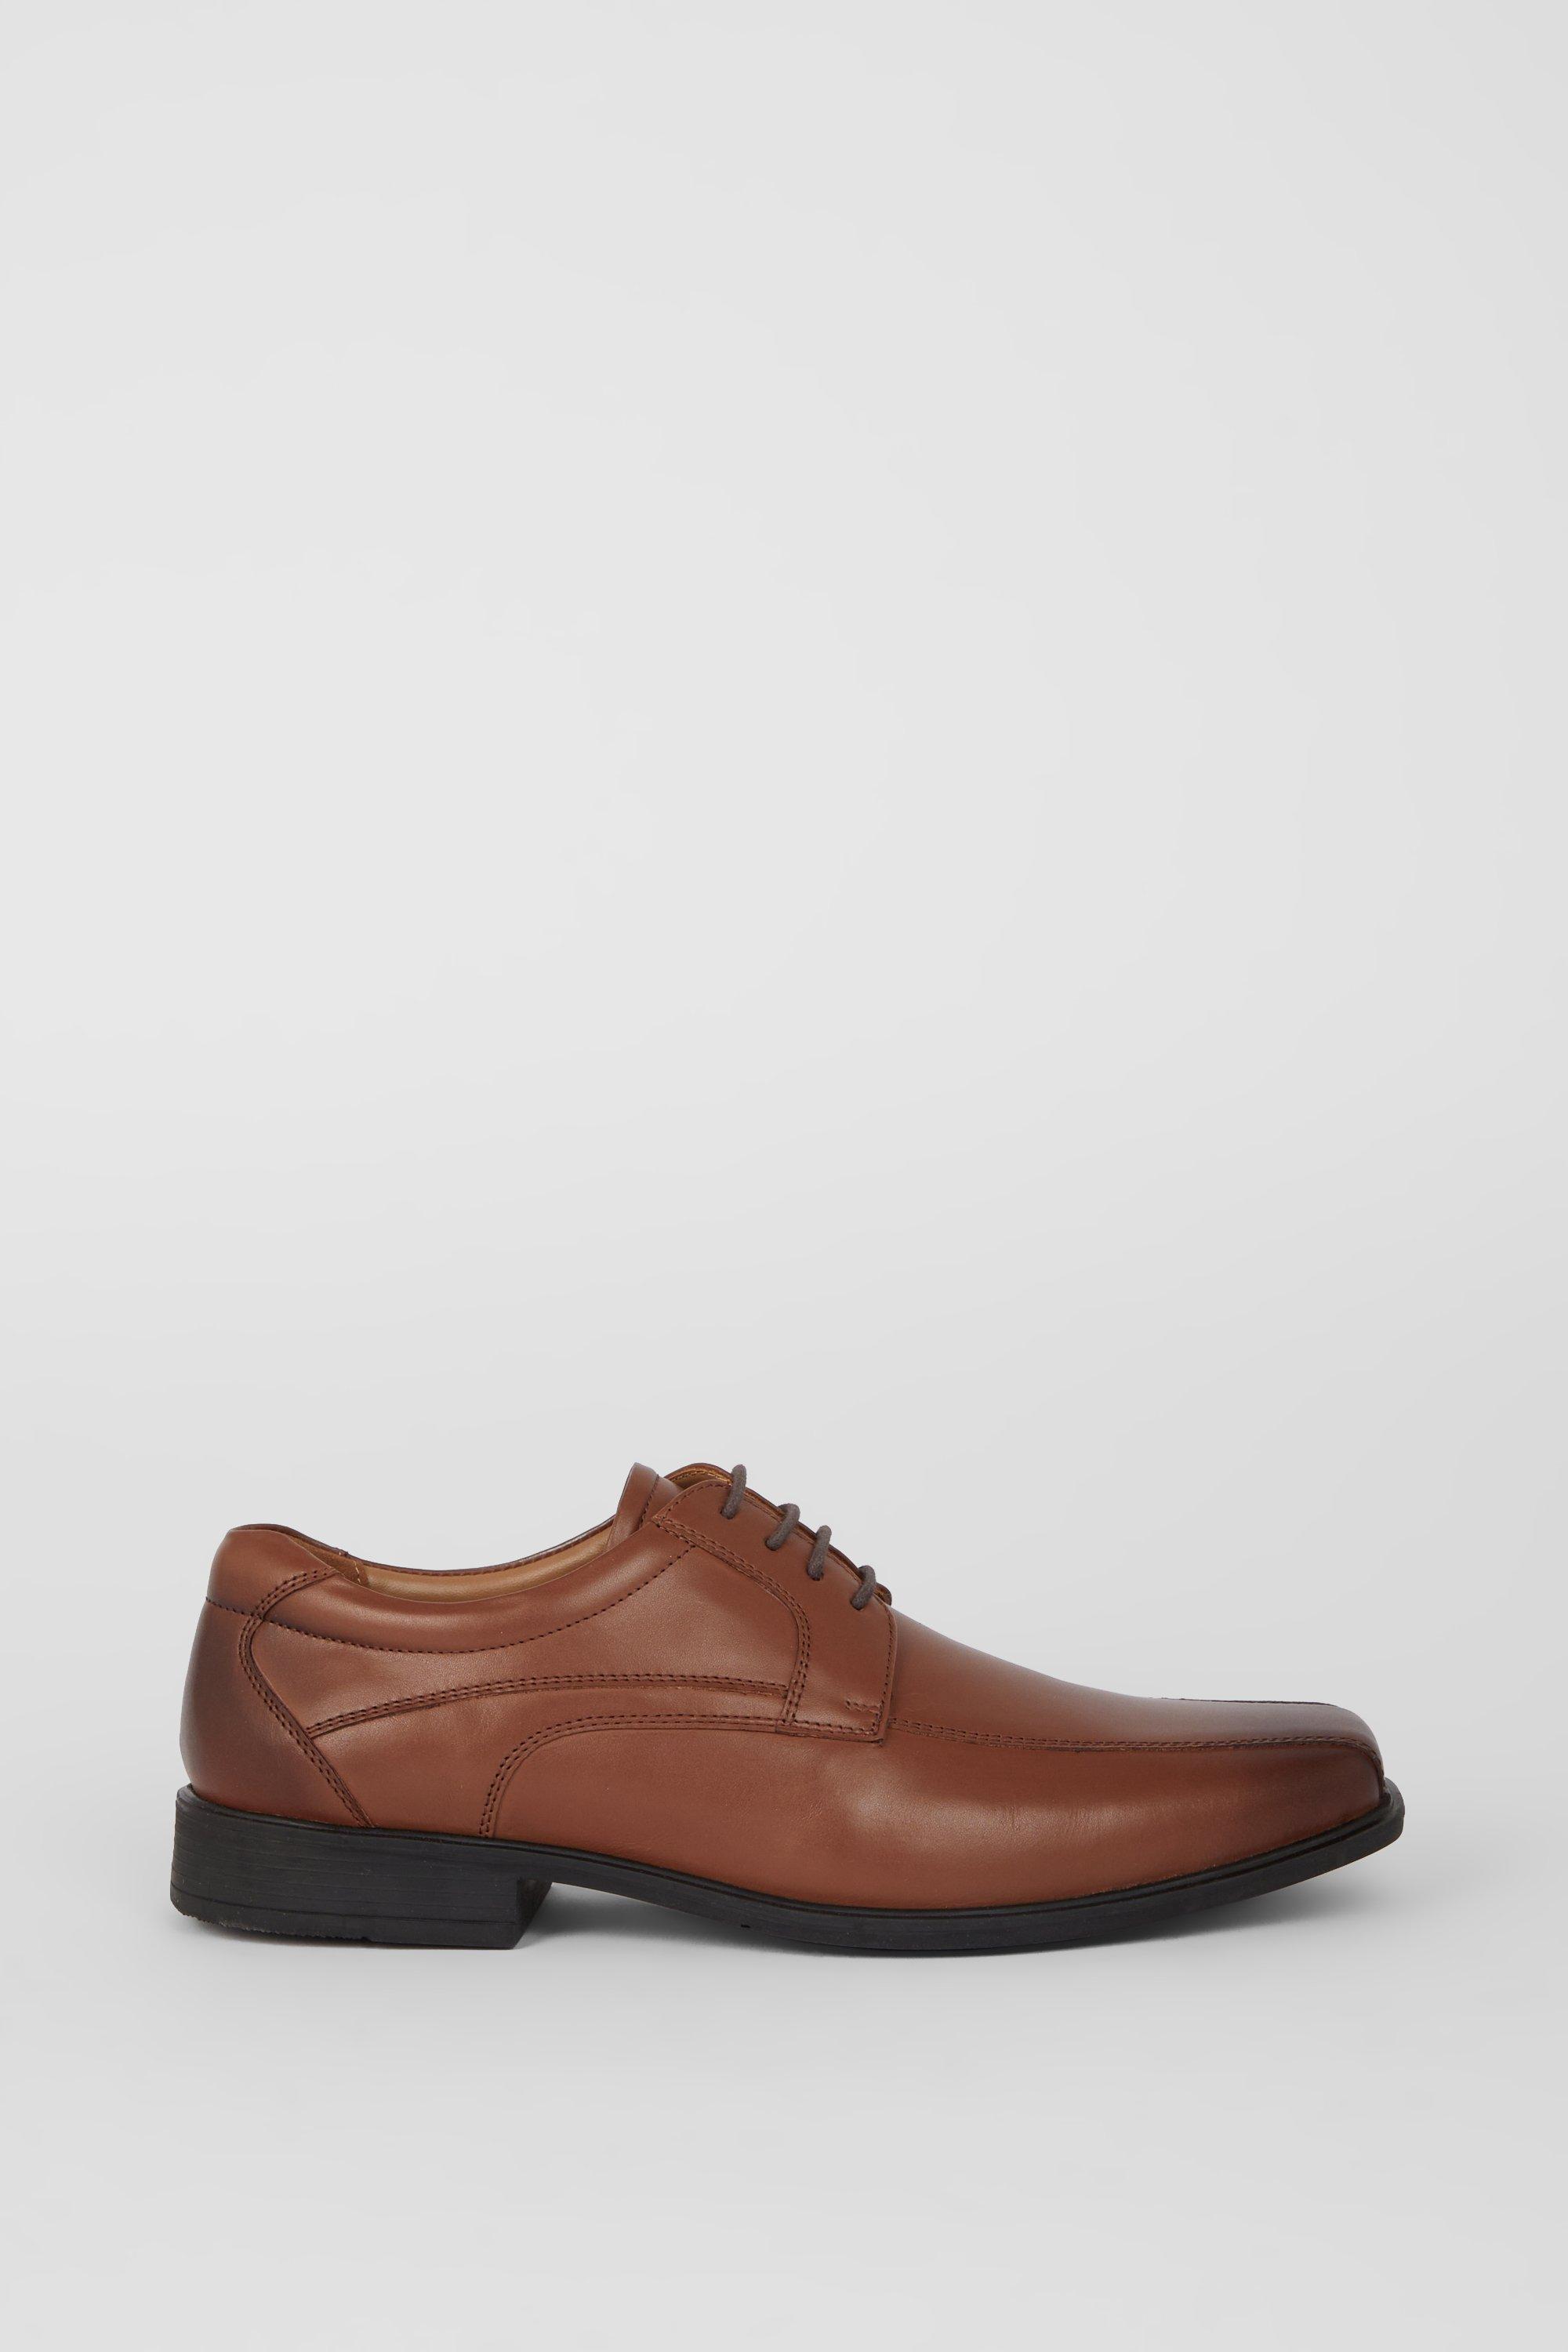 Кожаные туфли Airsoft Comfort на шнуровке Debenhams, коричневый кожаные туфли дерби airsoft comfort с перфорацией на шнуровке debenhams коричневый